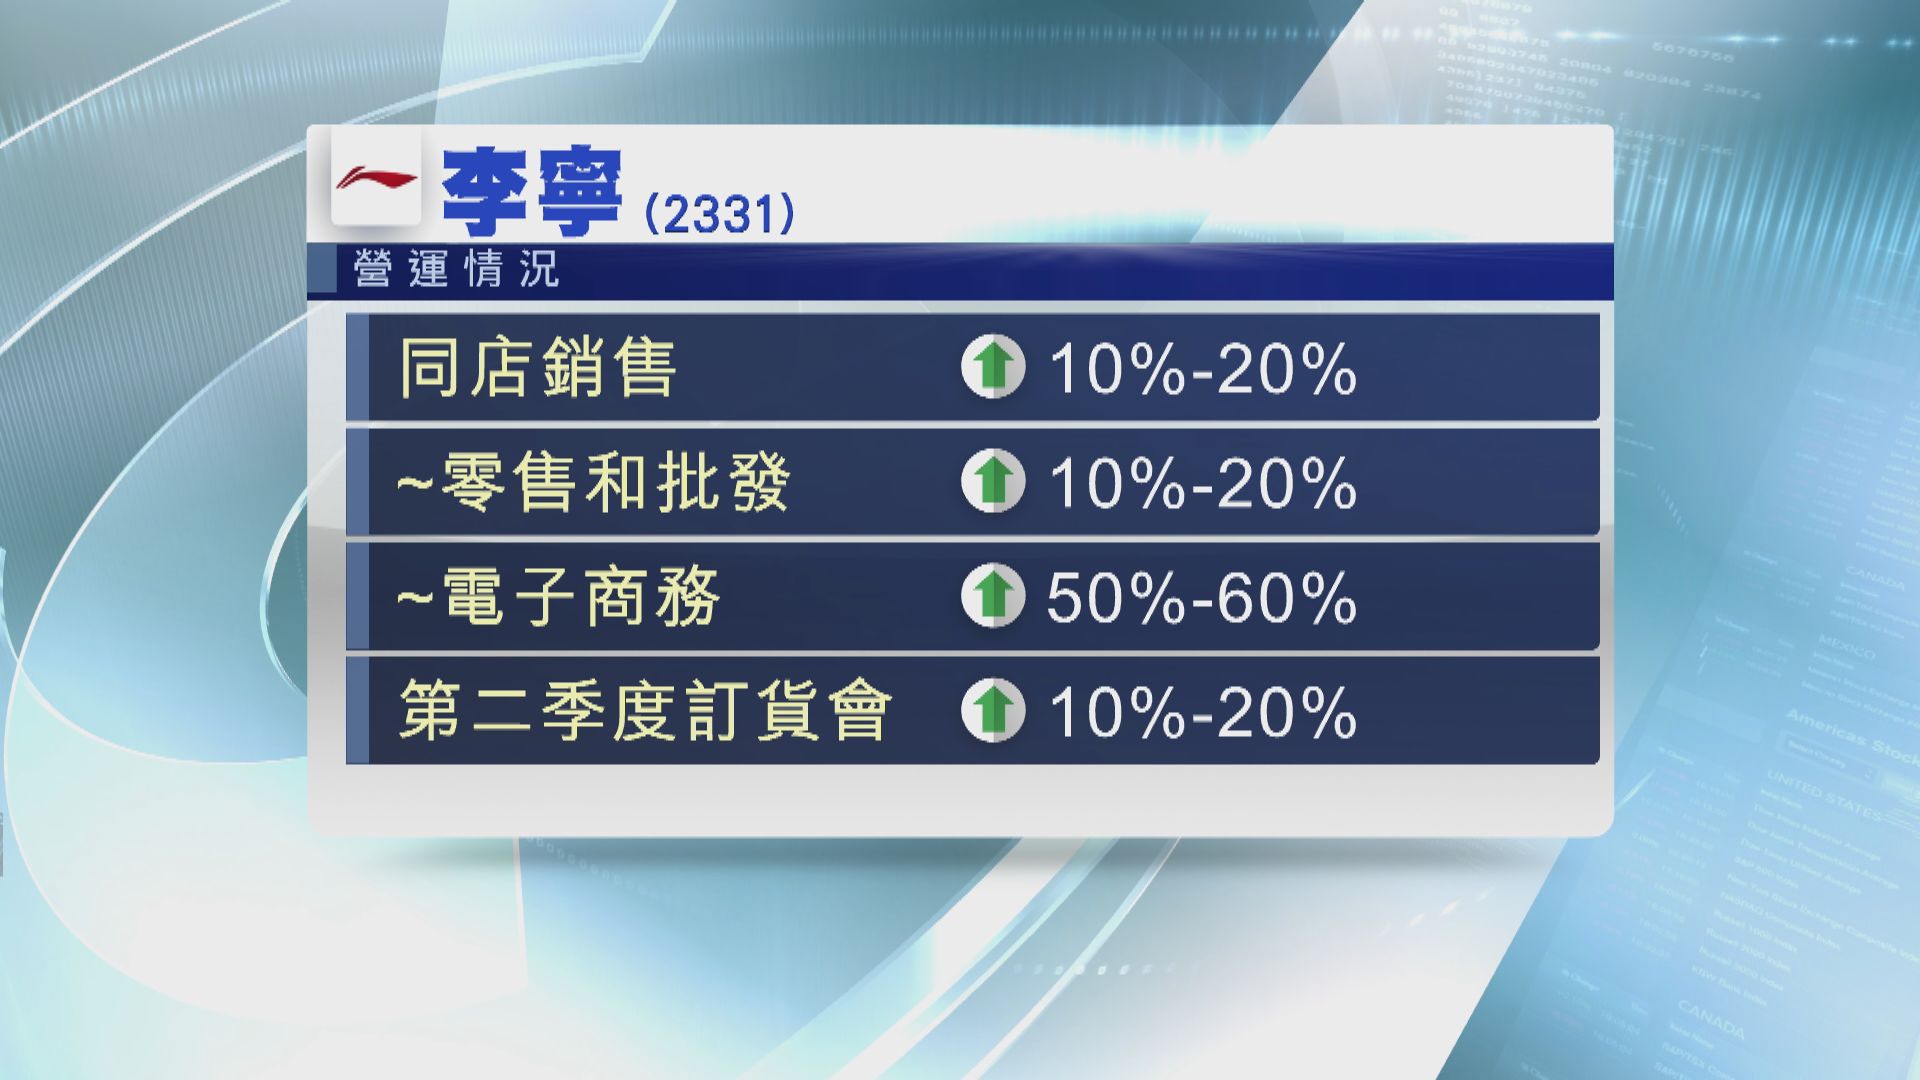 【銷售表現】李寧第三季同店銷售增10%至20%